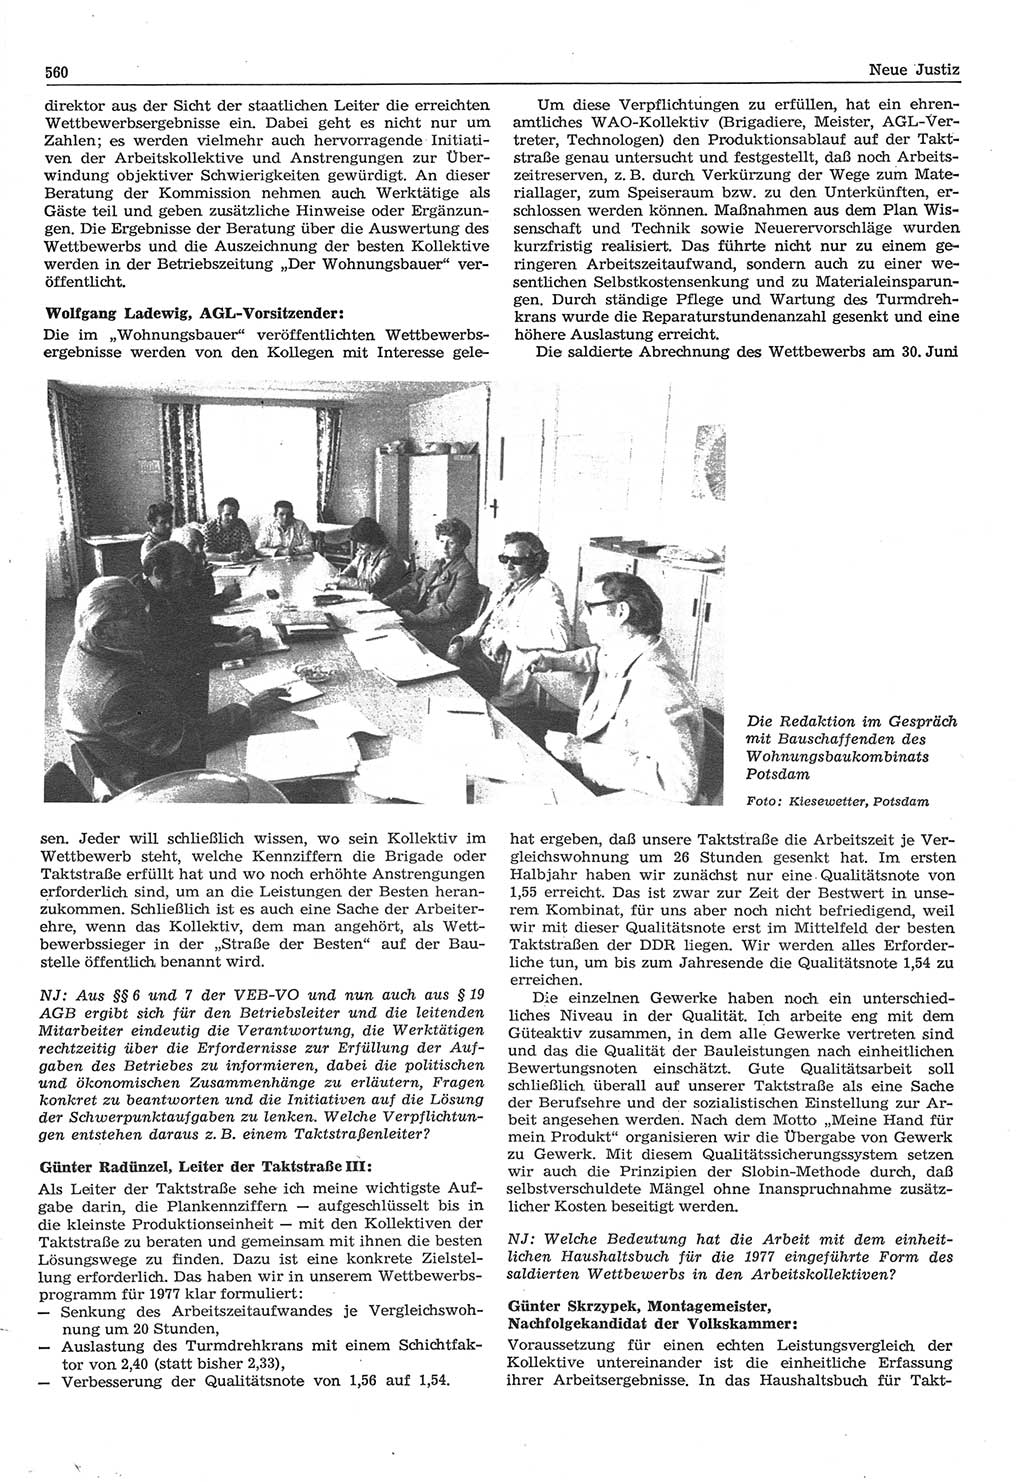 Neue Justiz (NJ), Zeitschrift für Recht und Rechtswissenschaft-Zeitschrift, sozialistisches Recht und Gesetzlichkeit, 31. Jahrgang 1977, Seite 560 (NJ DDR 1977, S. 560)